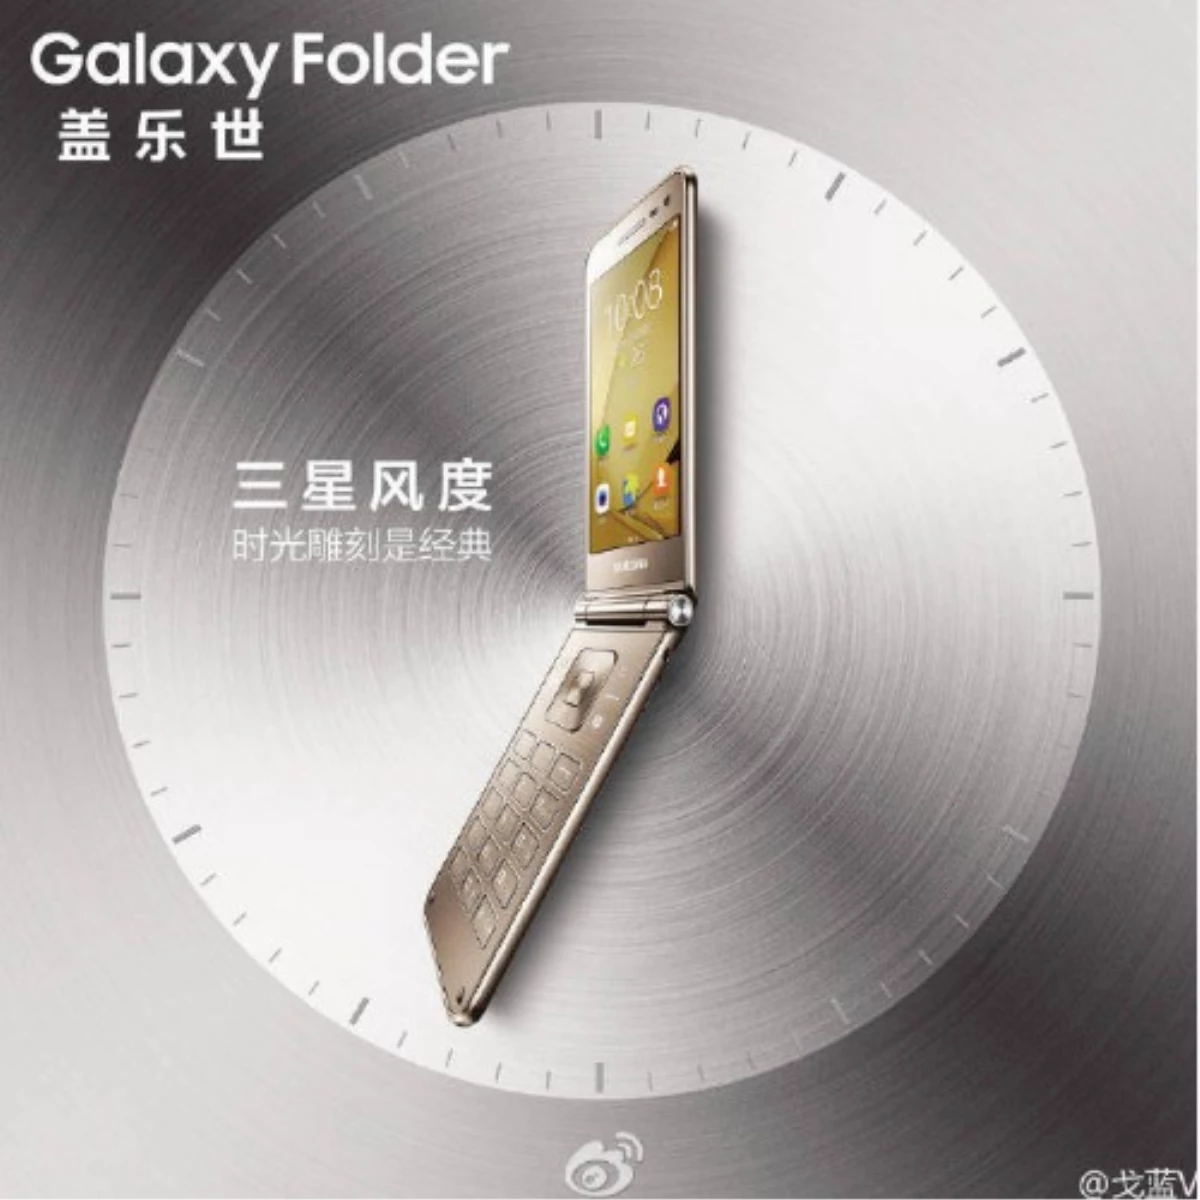 Kapaklı Galaxy Folder 2 Göründü!